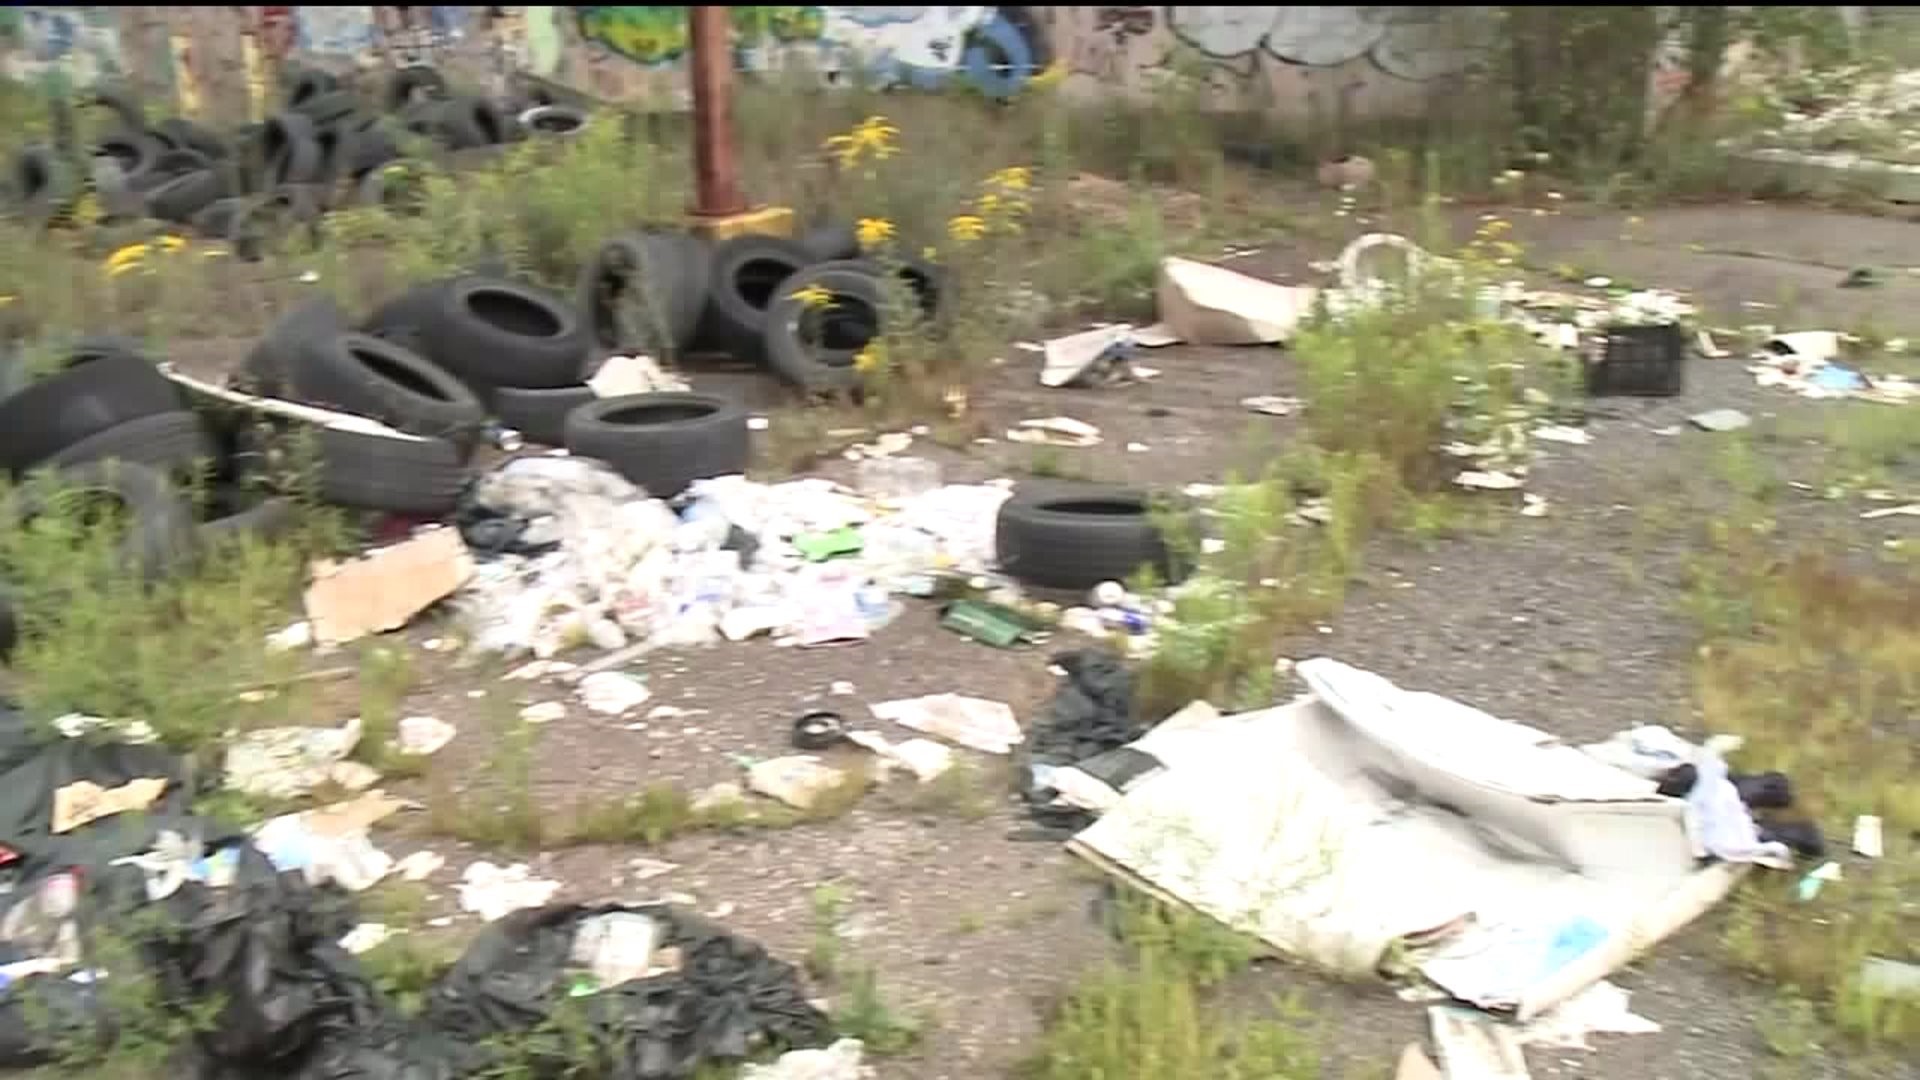 Crackdown in Hazleton on Illegal Dumpers